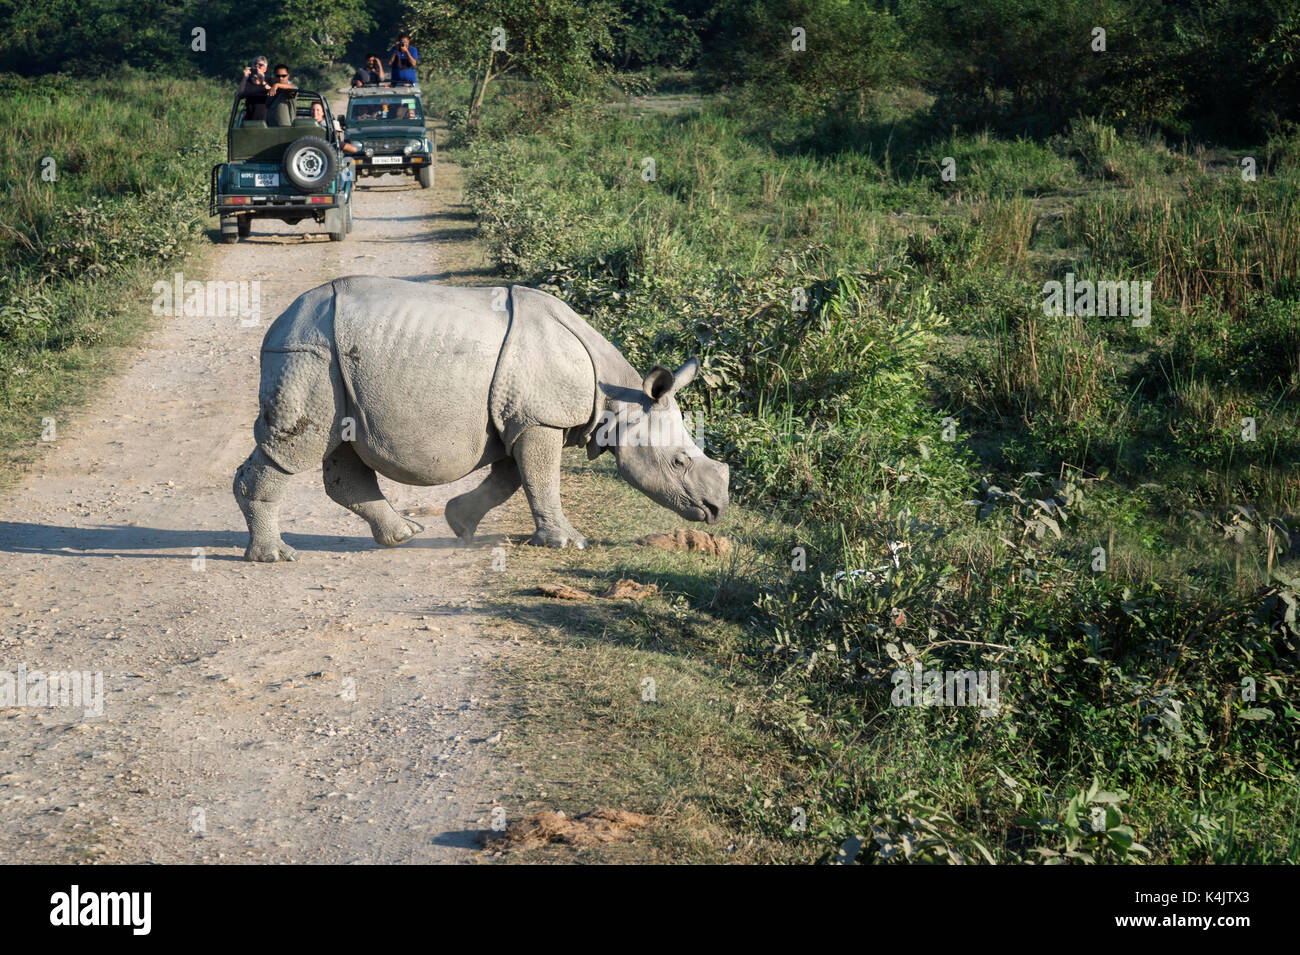 Les jeunes rhinocéros indien (Rhinoceros unicornis) traverser une route en face d'un véhicule avec les touristes, kaziranga, Assam, Inde, Asie Banque D'Images